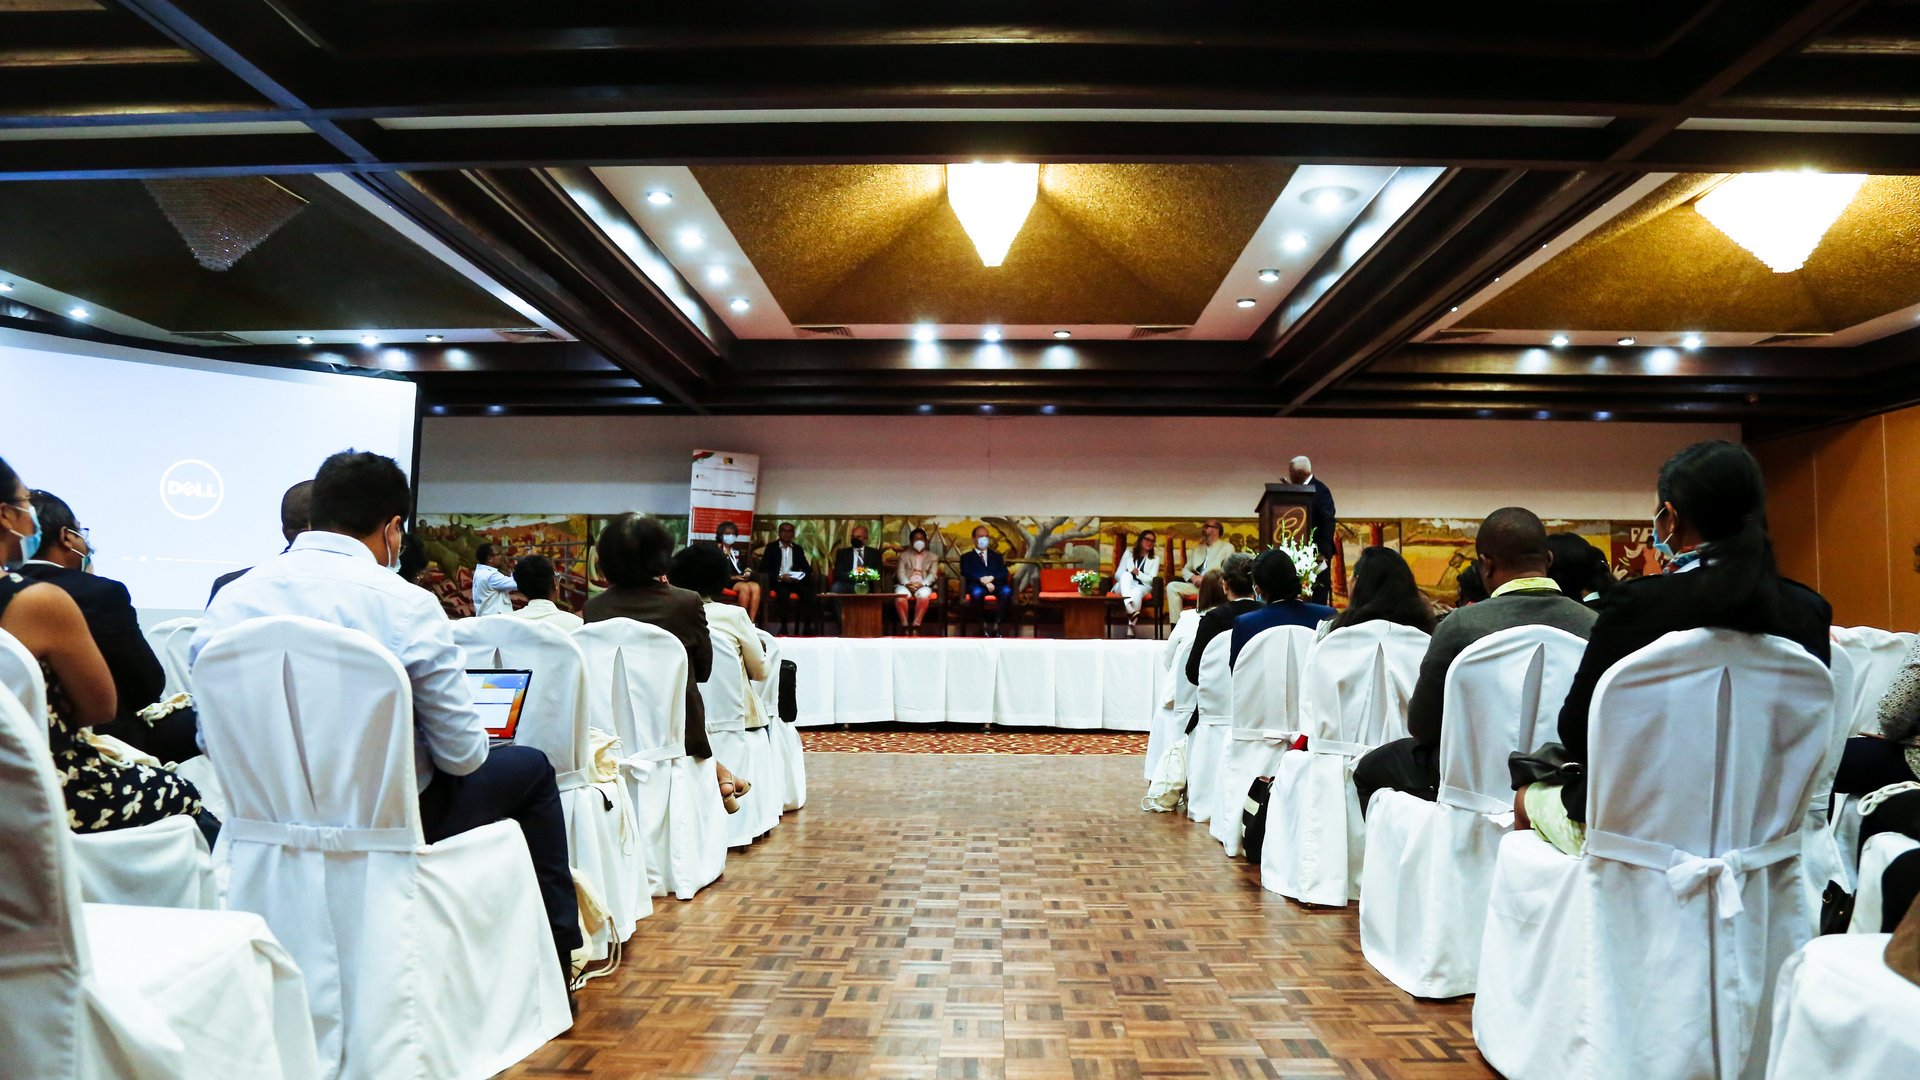 Eröffnungszeremonie - Blick in den Konferenzraum, vorn steht ein Sprecher